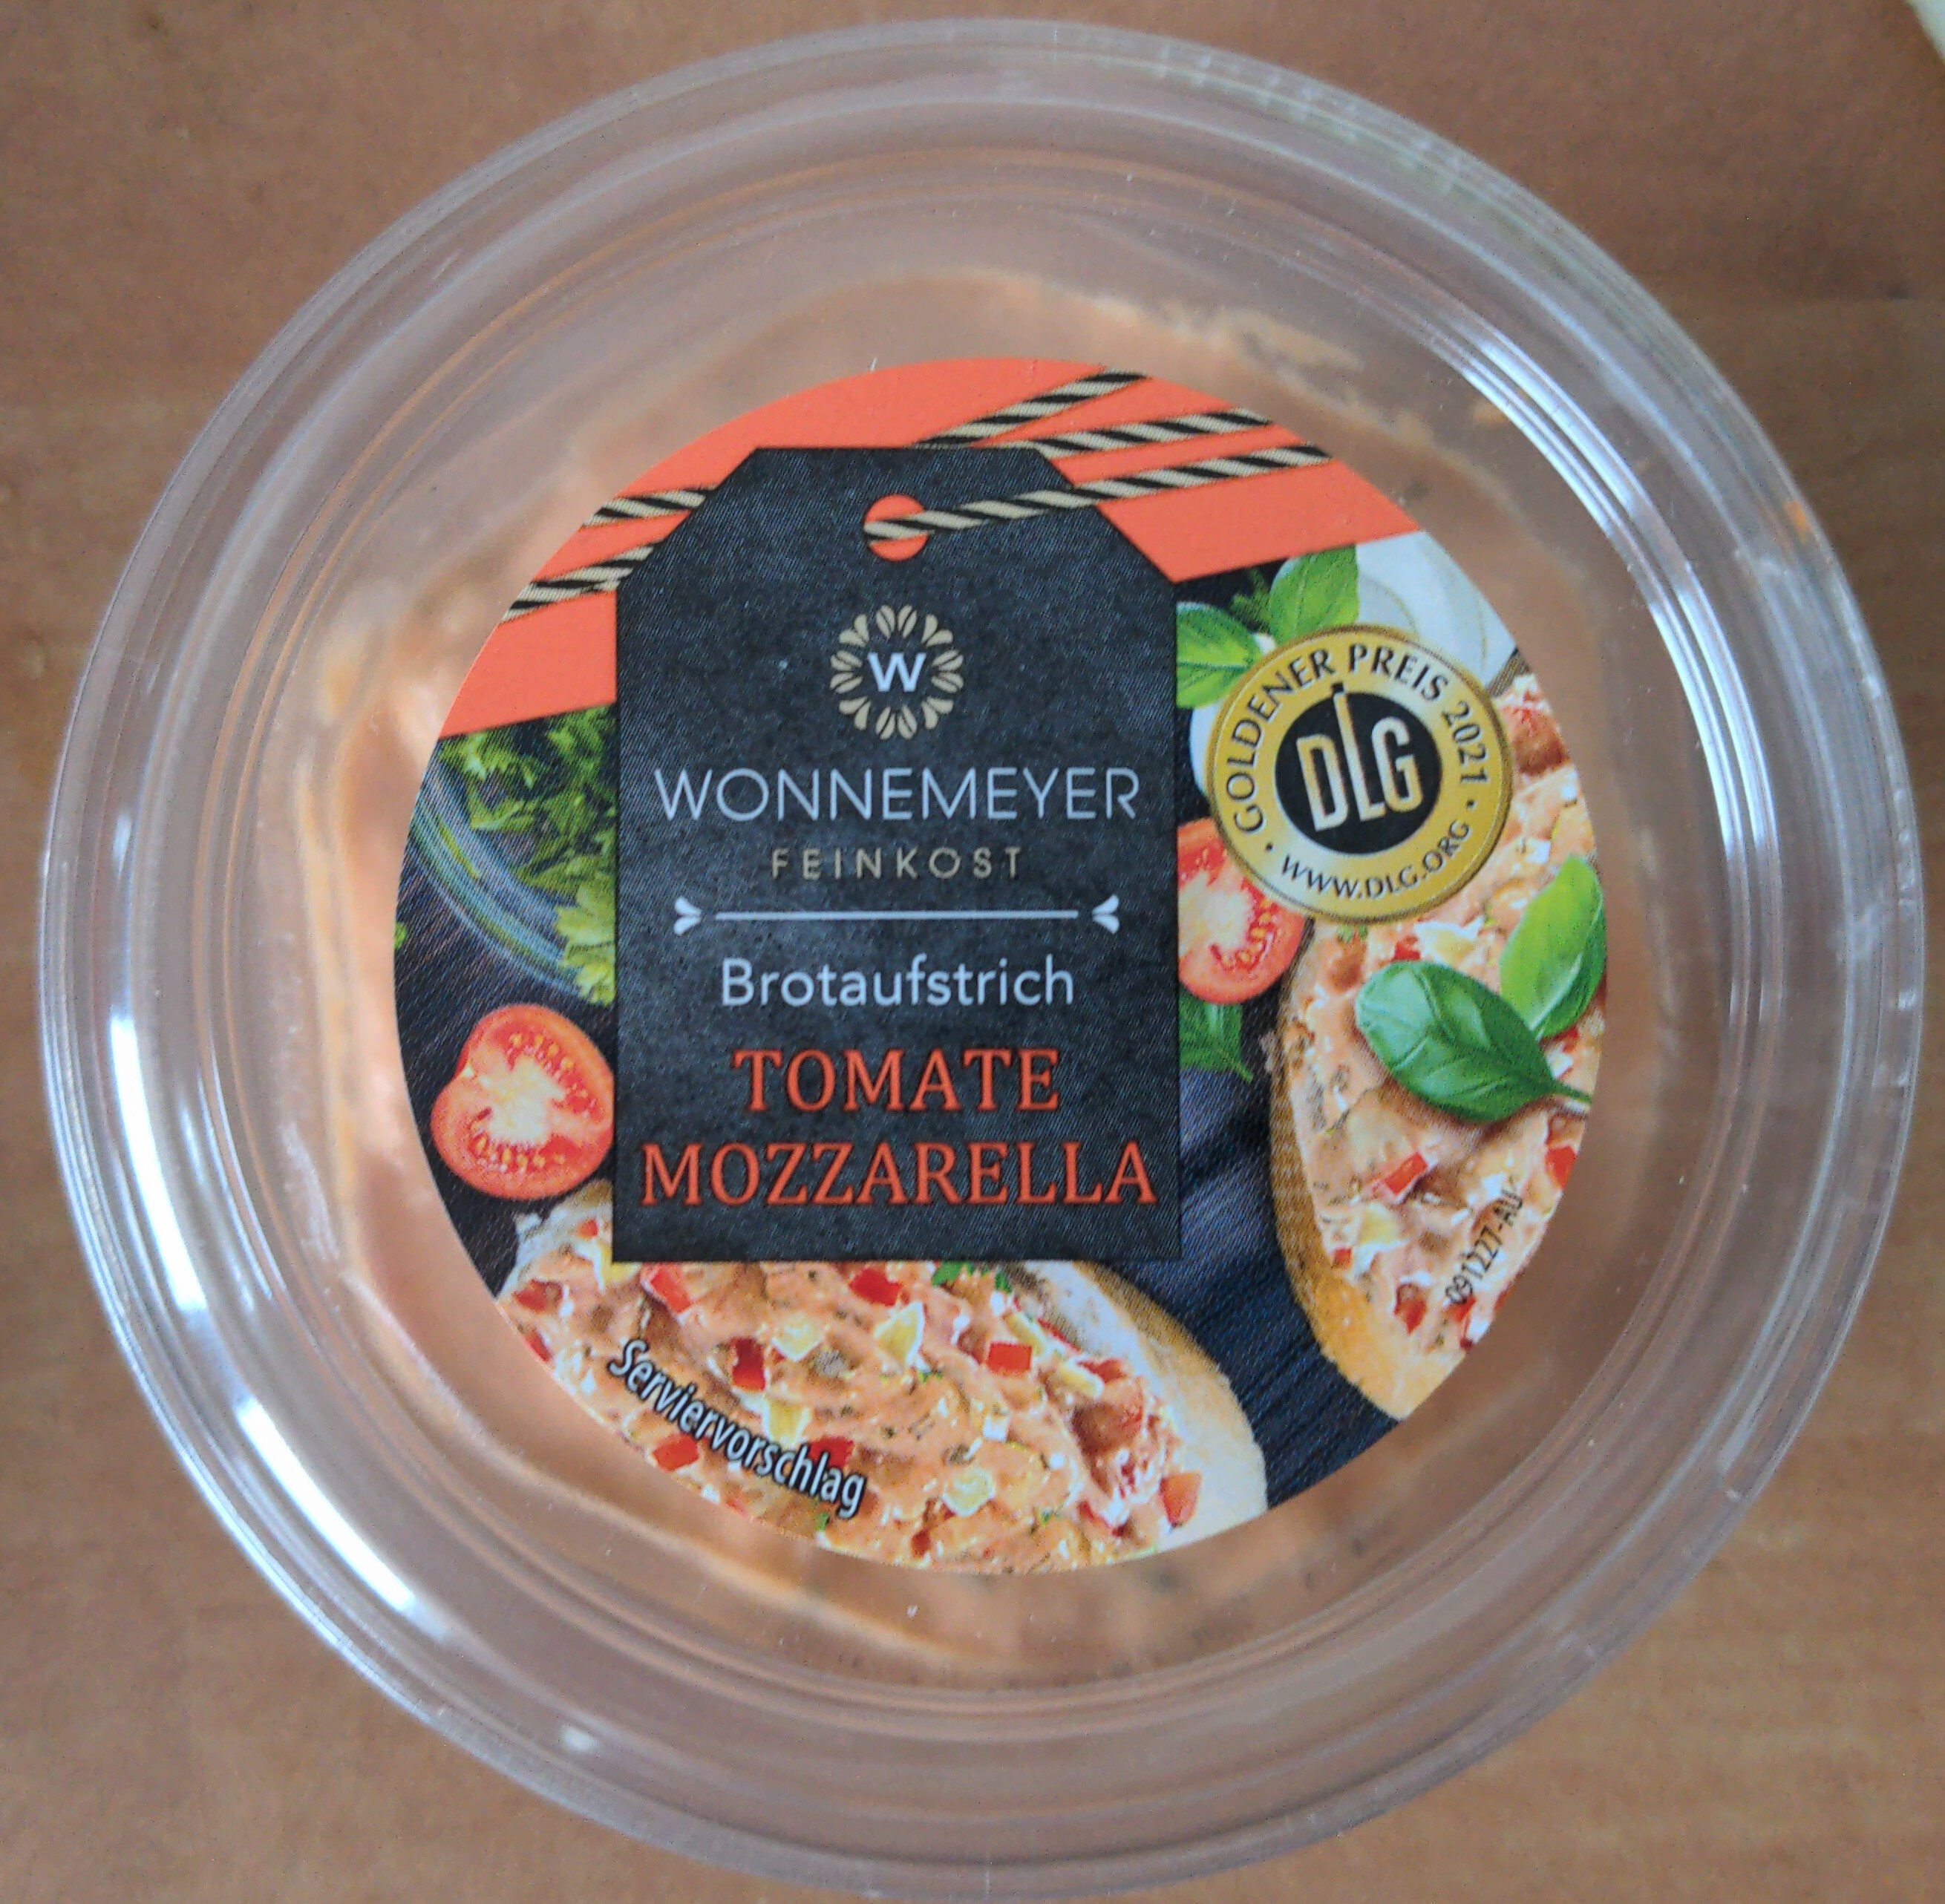 Brotaufstrich Tomate-Mozzarella - Producto - de